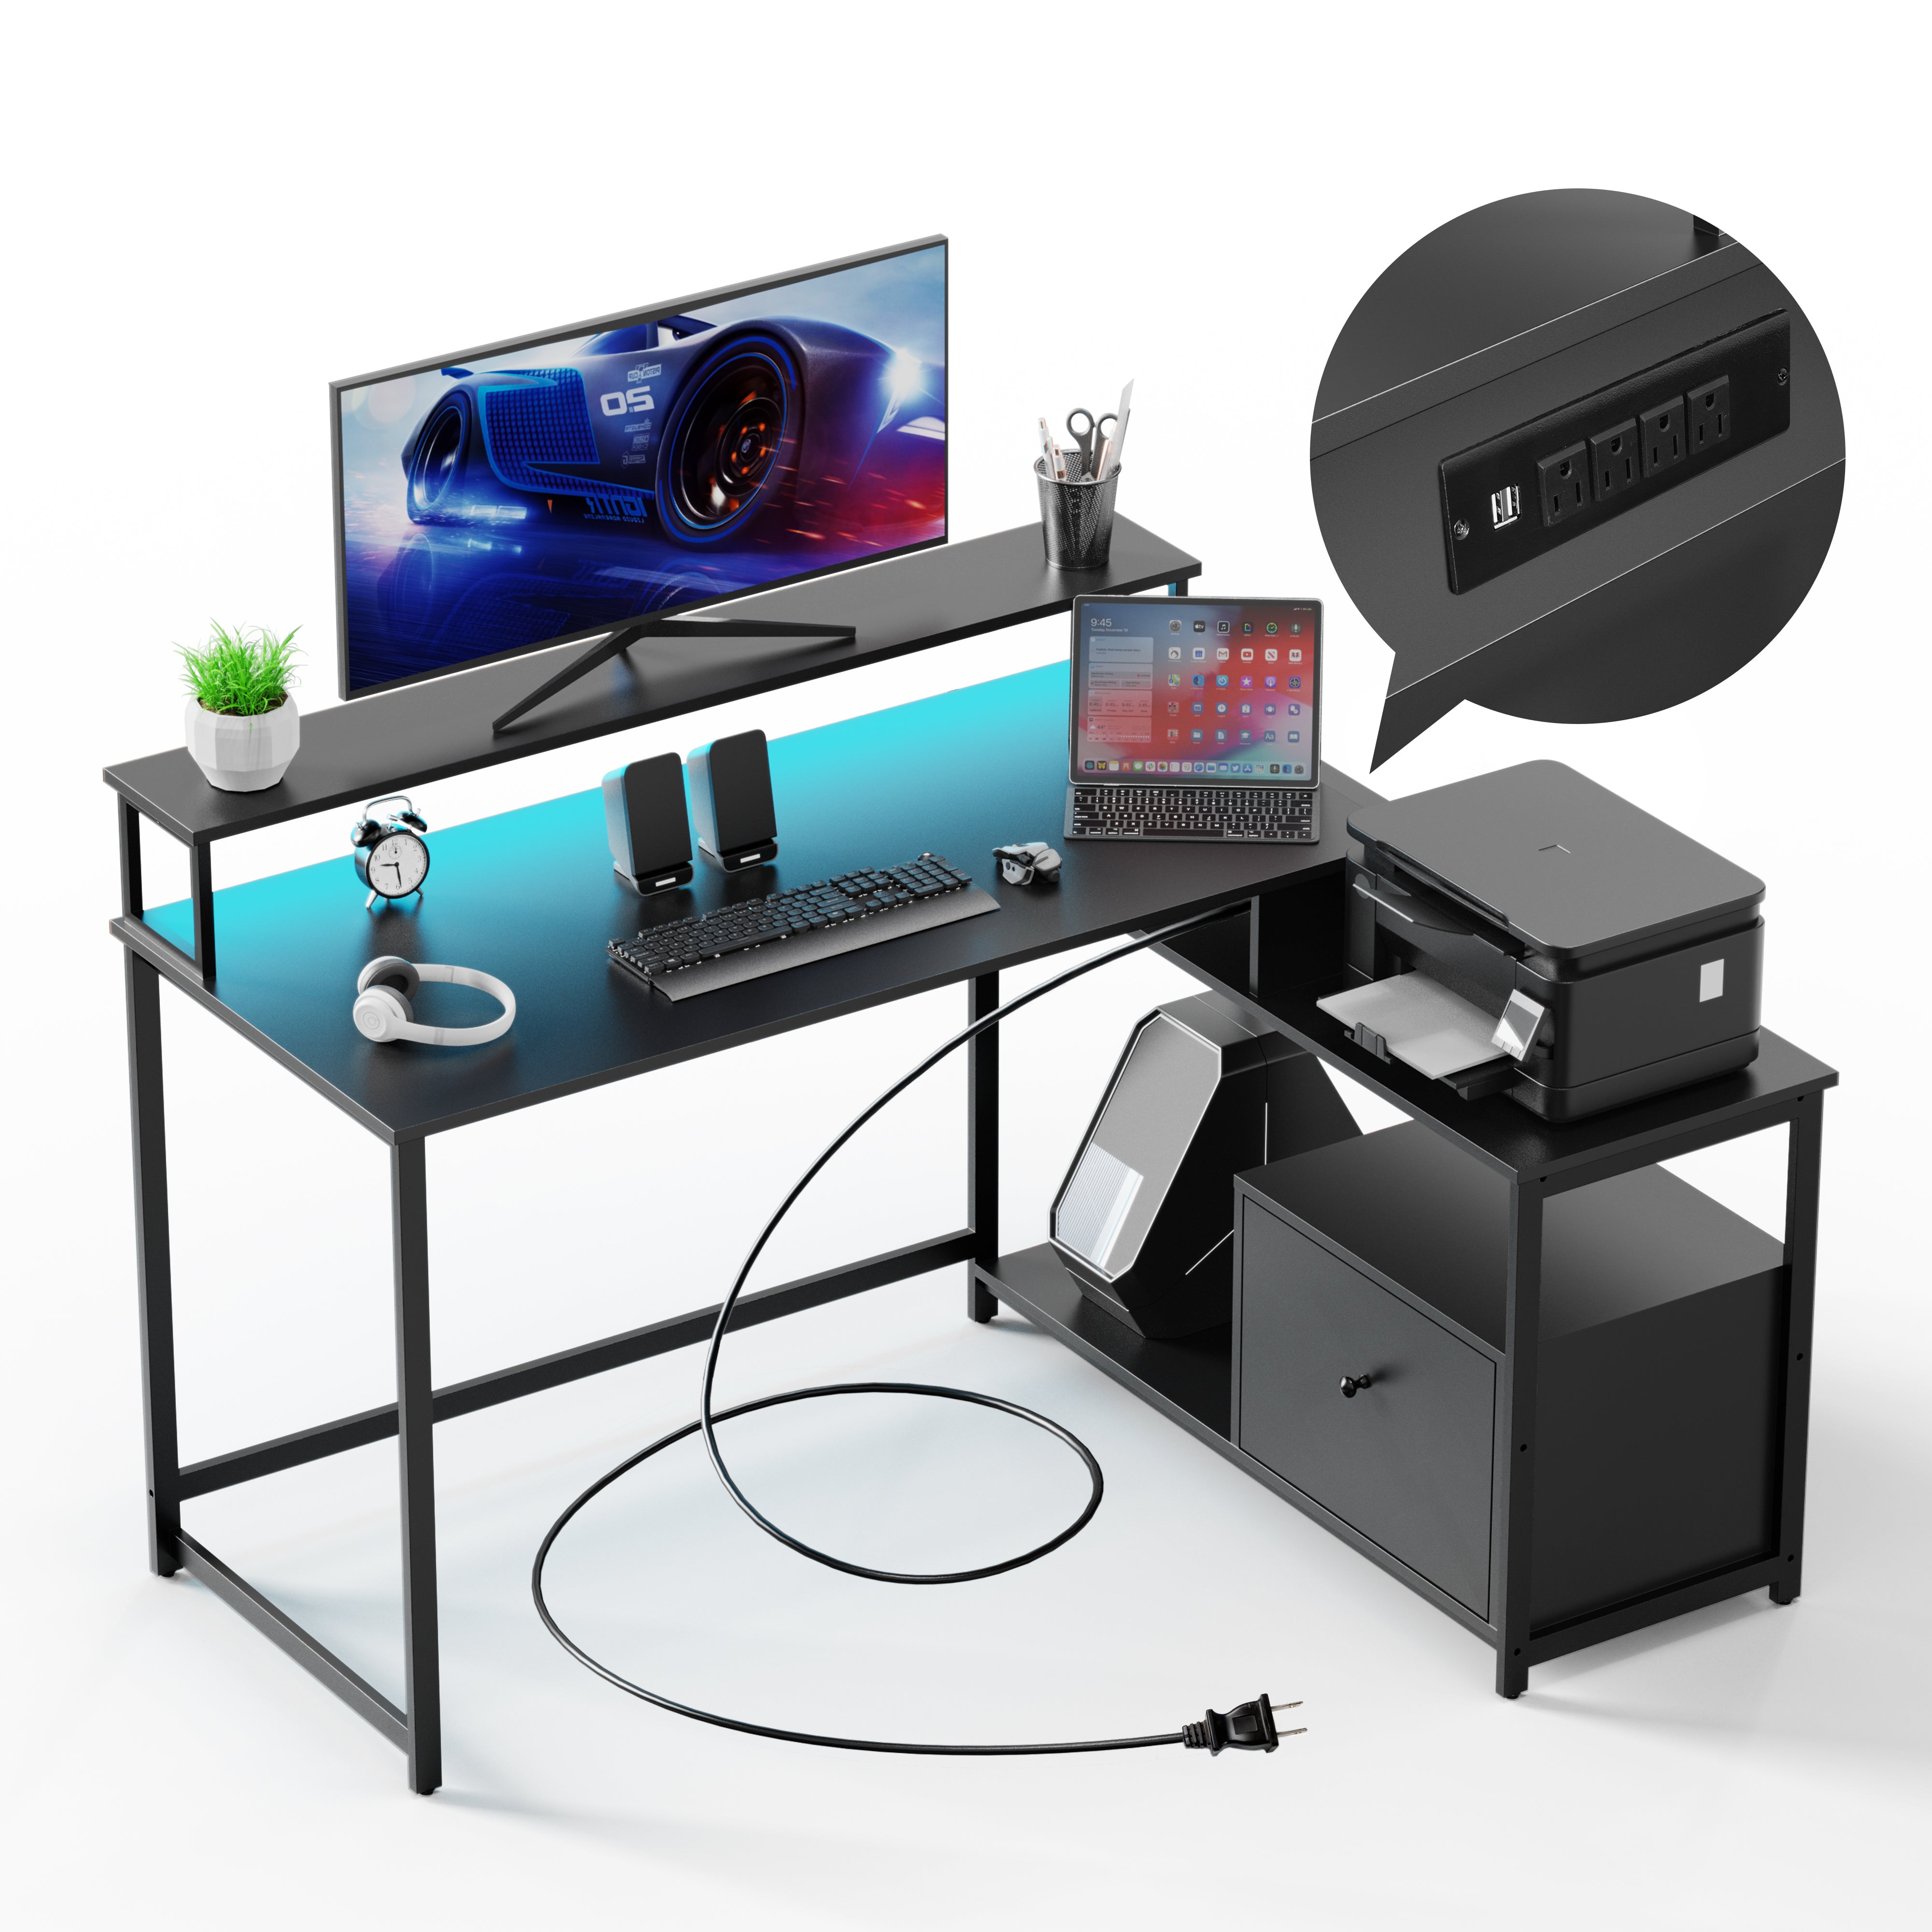 Evajoy HOF003 Home Office Computer Desk with File Drawer, LED Strip, Ergonomic L-Shaped Gaming Desk